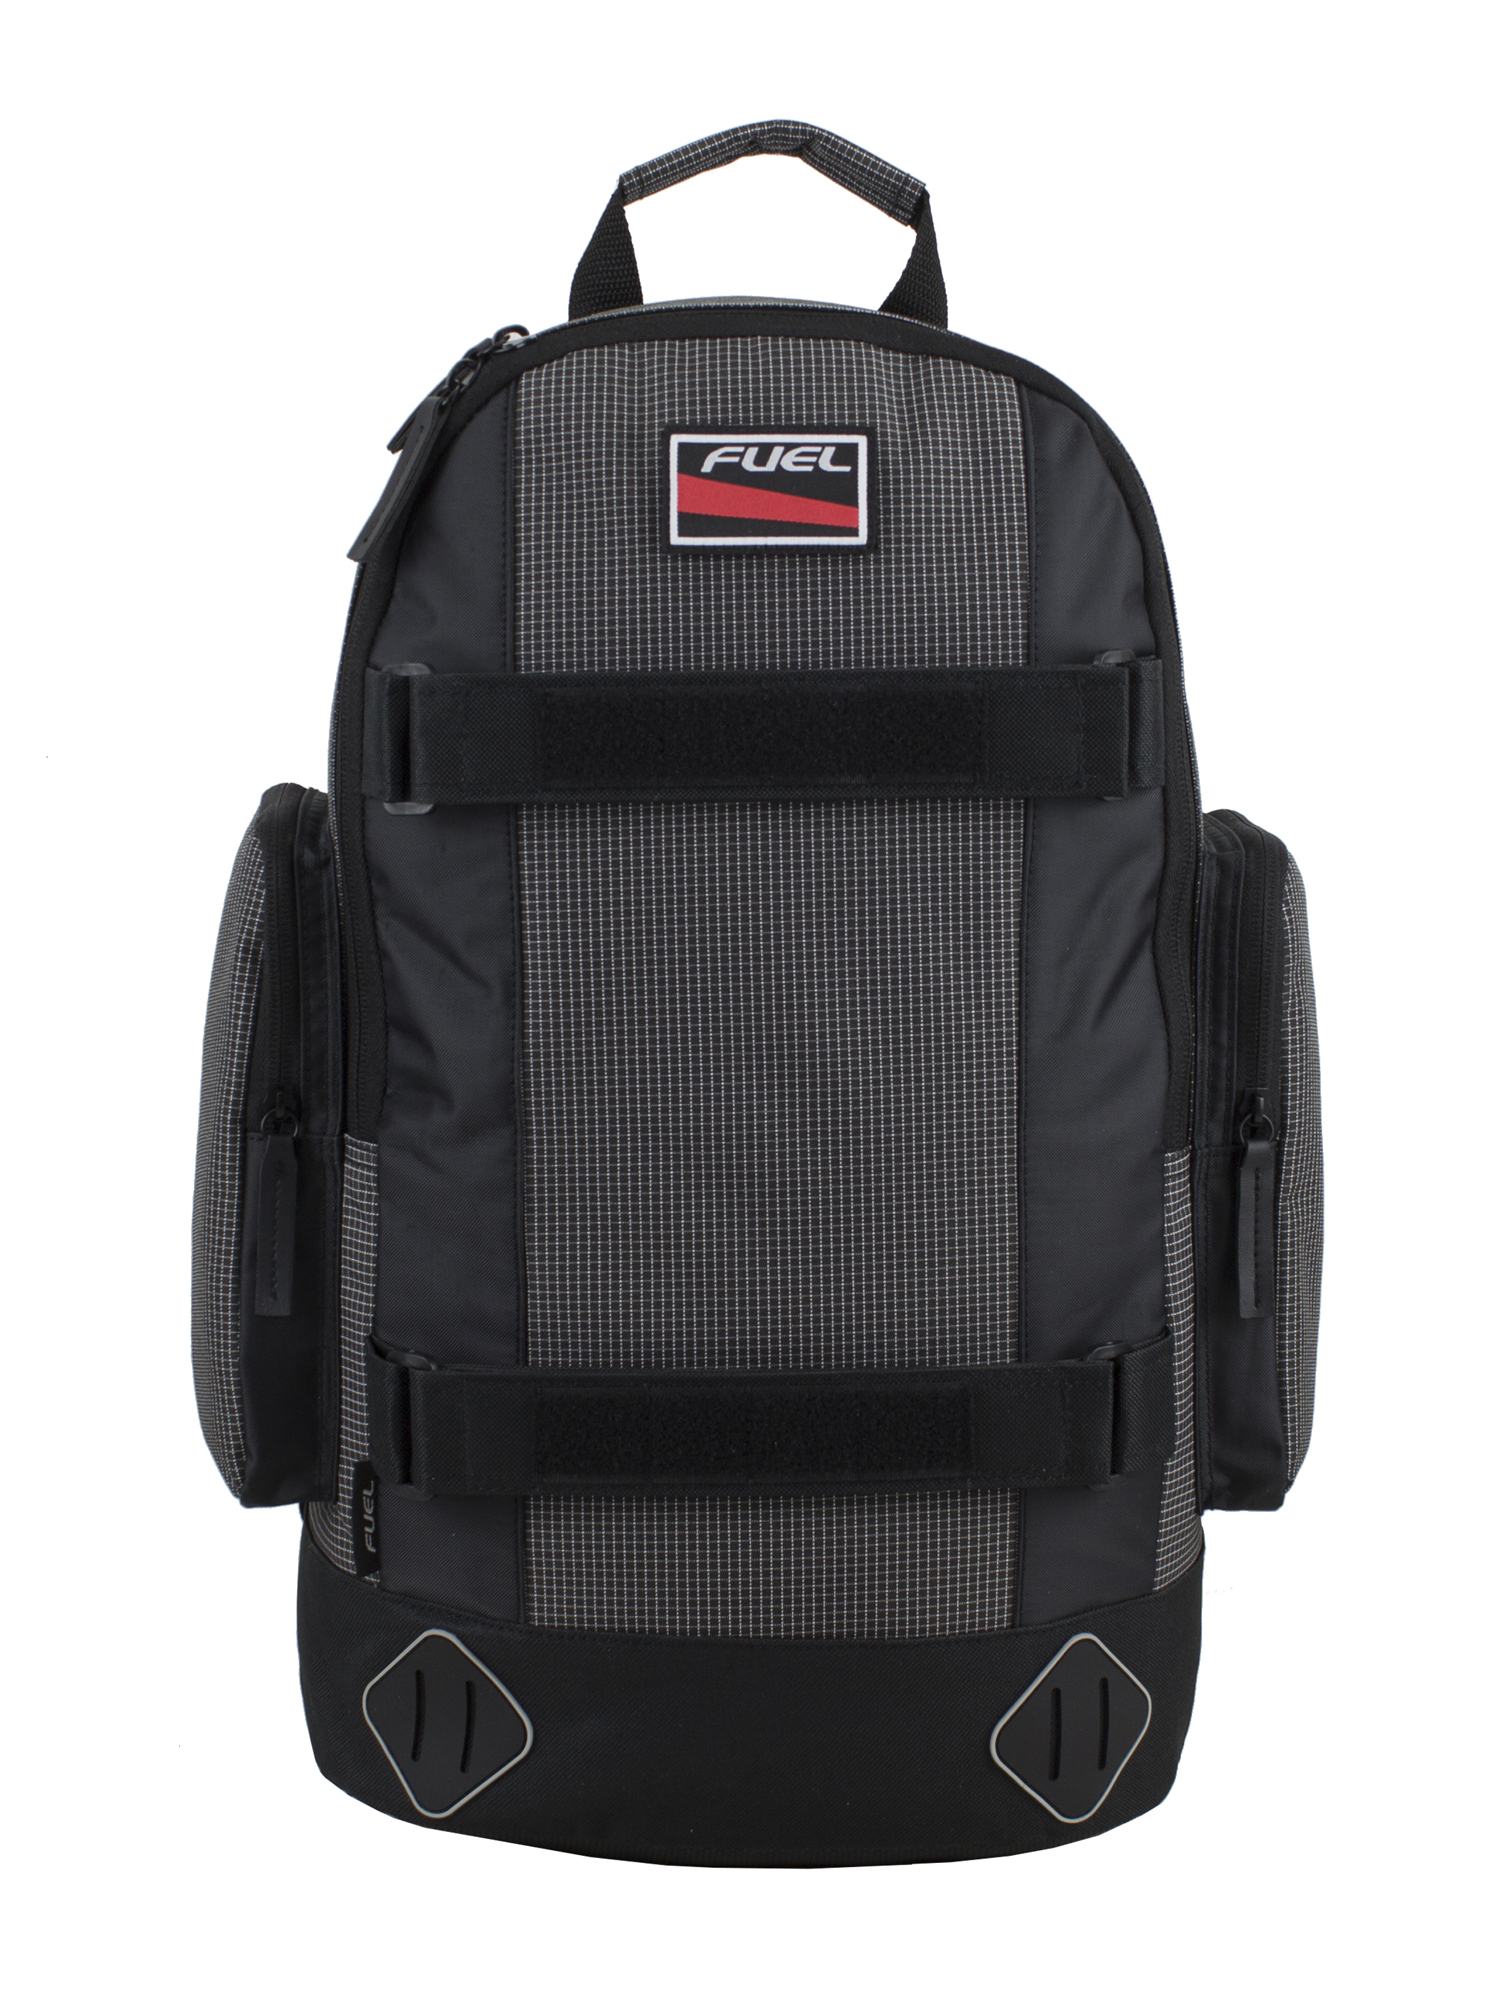 Fuel Pro Skater Backpack - image 2 of 6